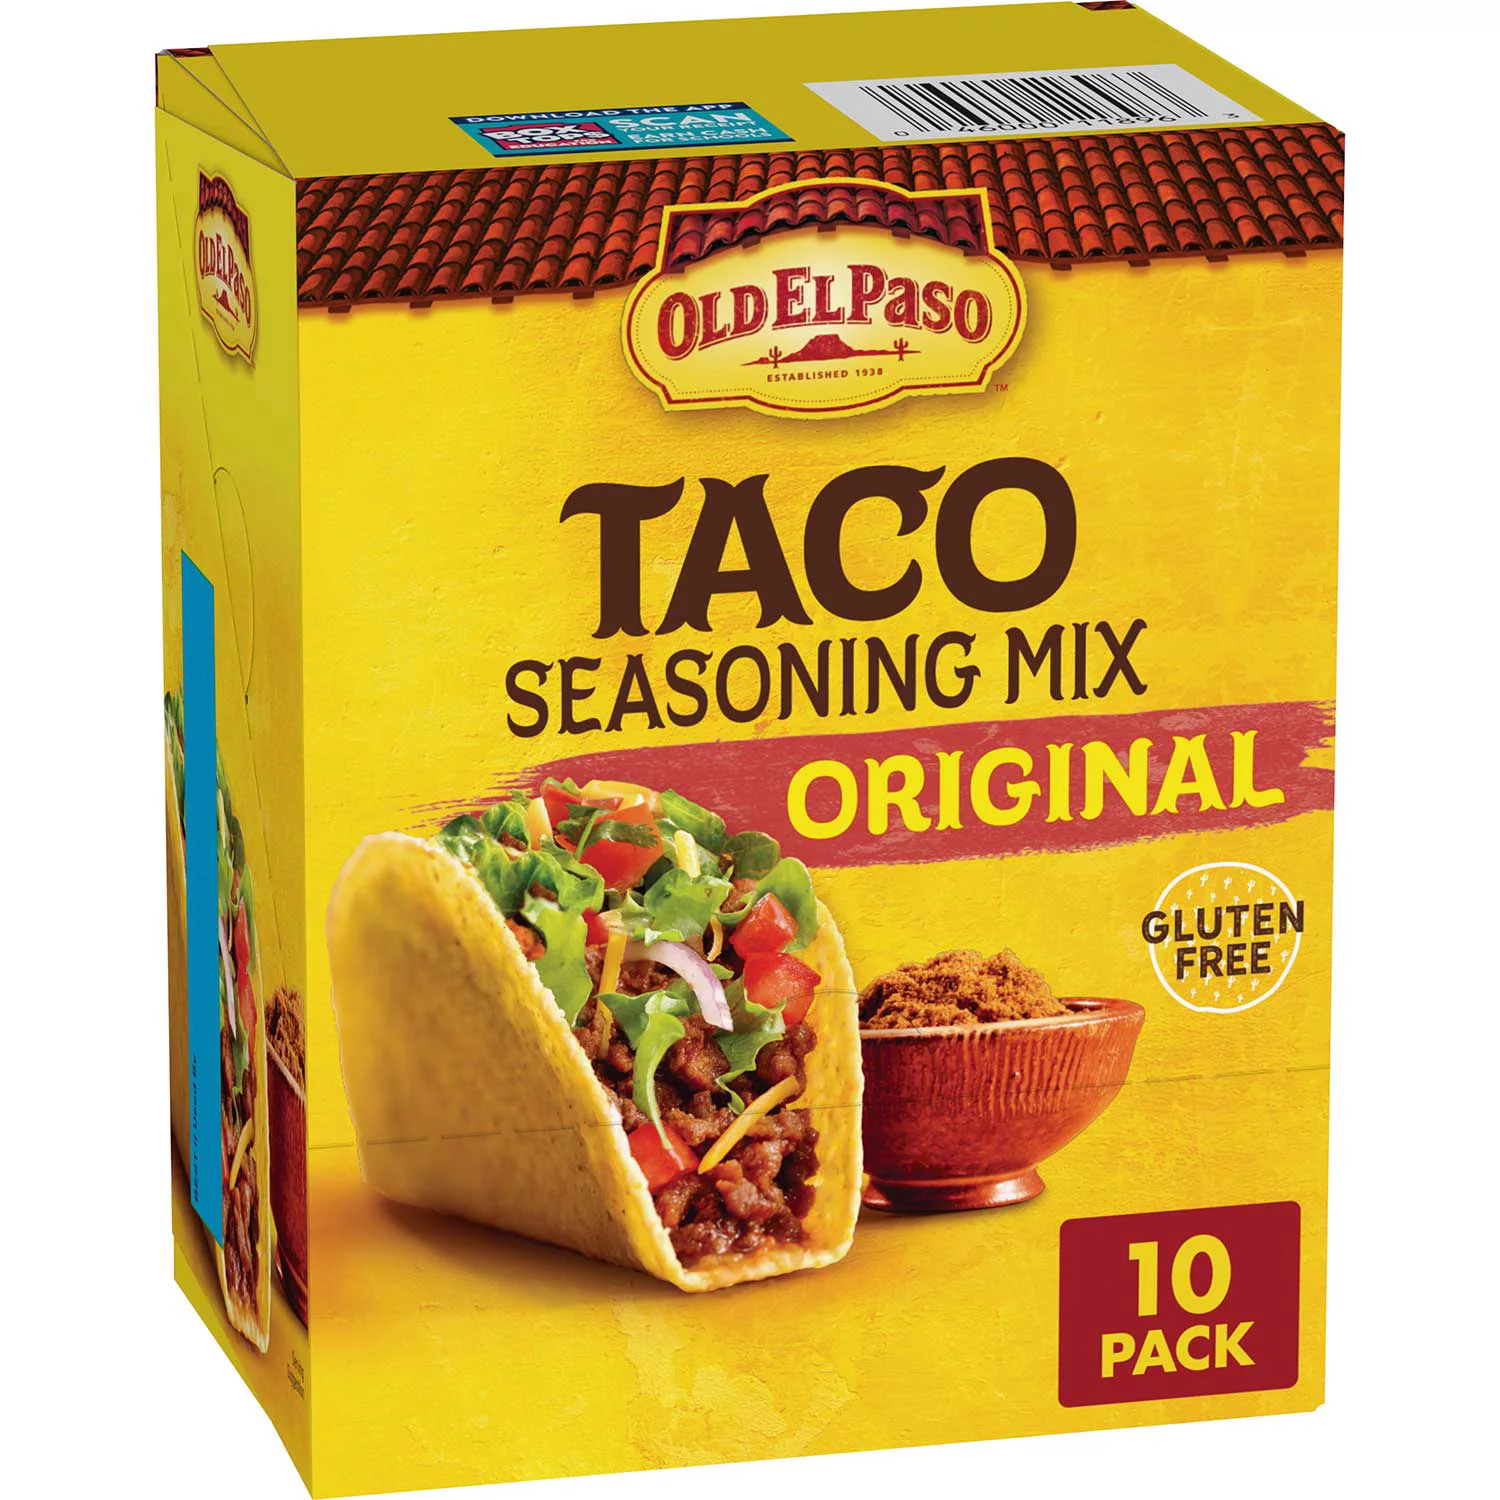 Old El Paso Original Taco Seasoning